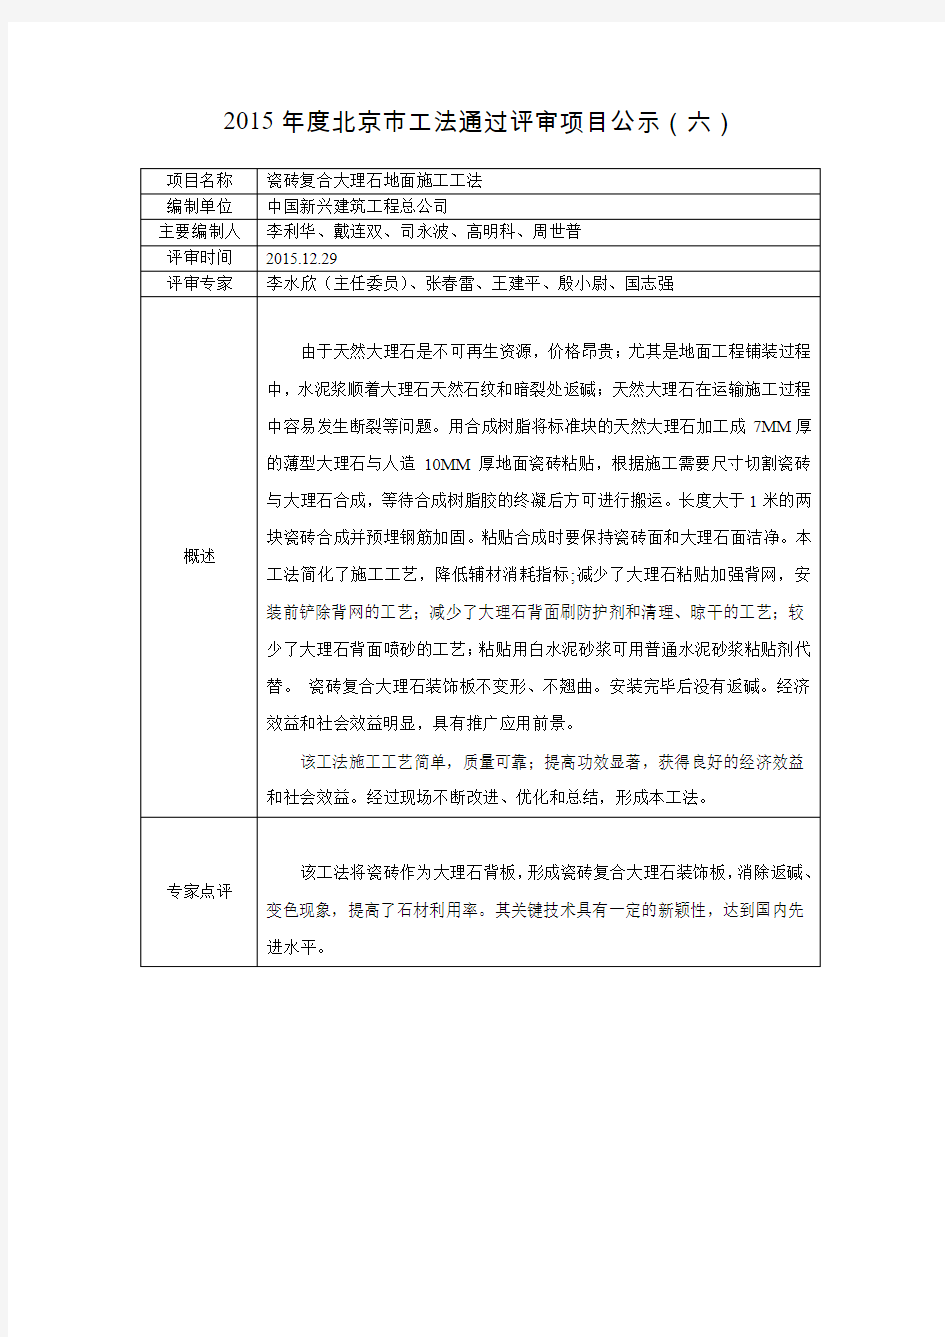 2015年度北京市工法通过评审项目公示